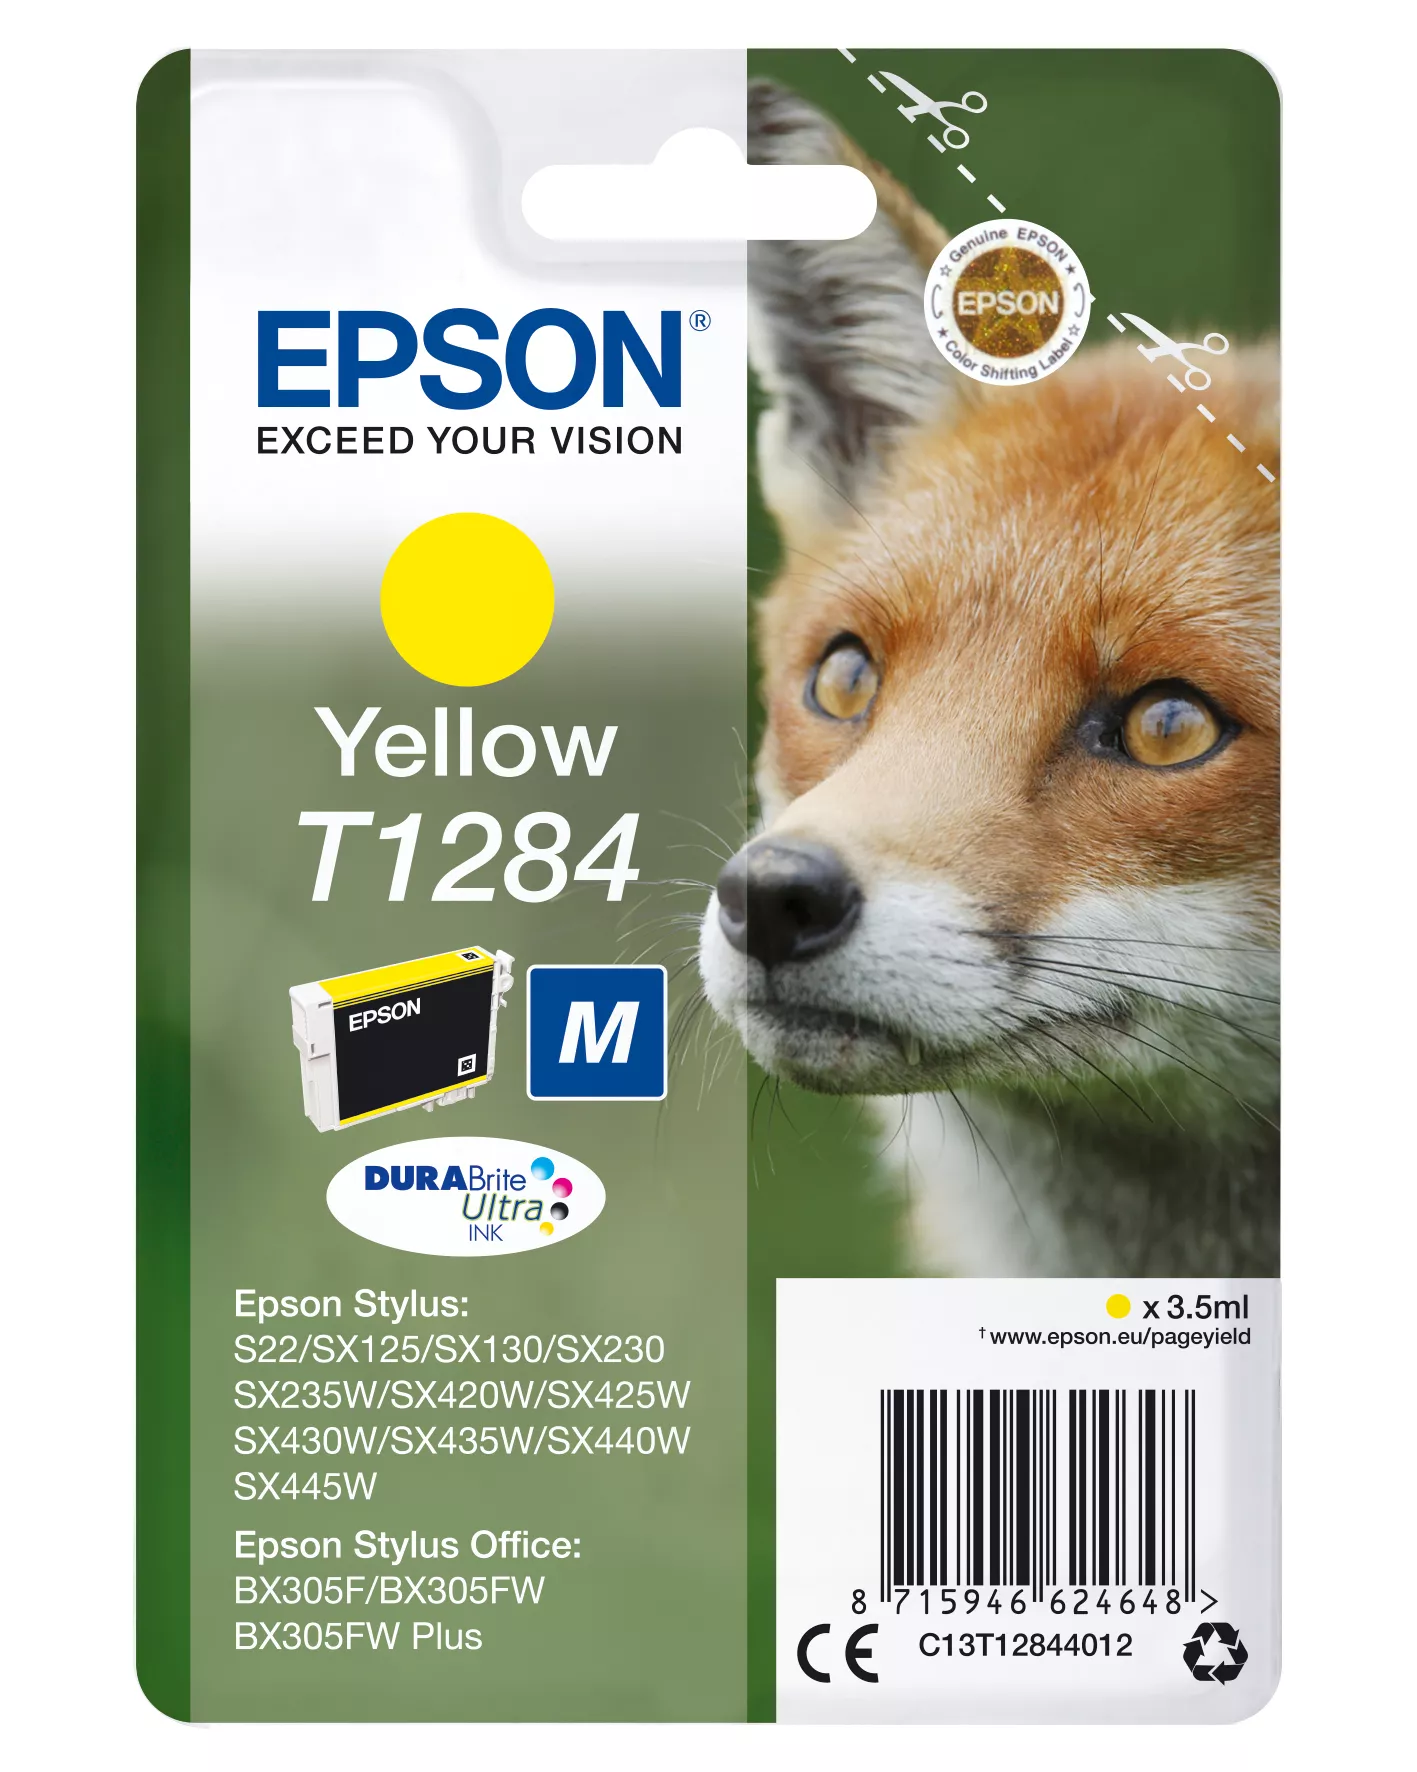 Achat EPSON T1284 cartouche d encre jaune capacité standard 3 - 8715946624648